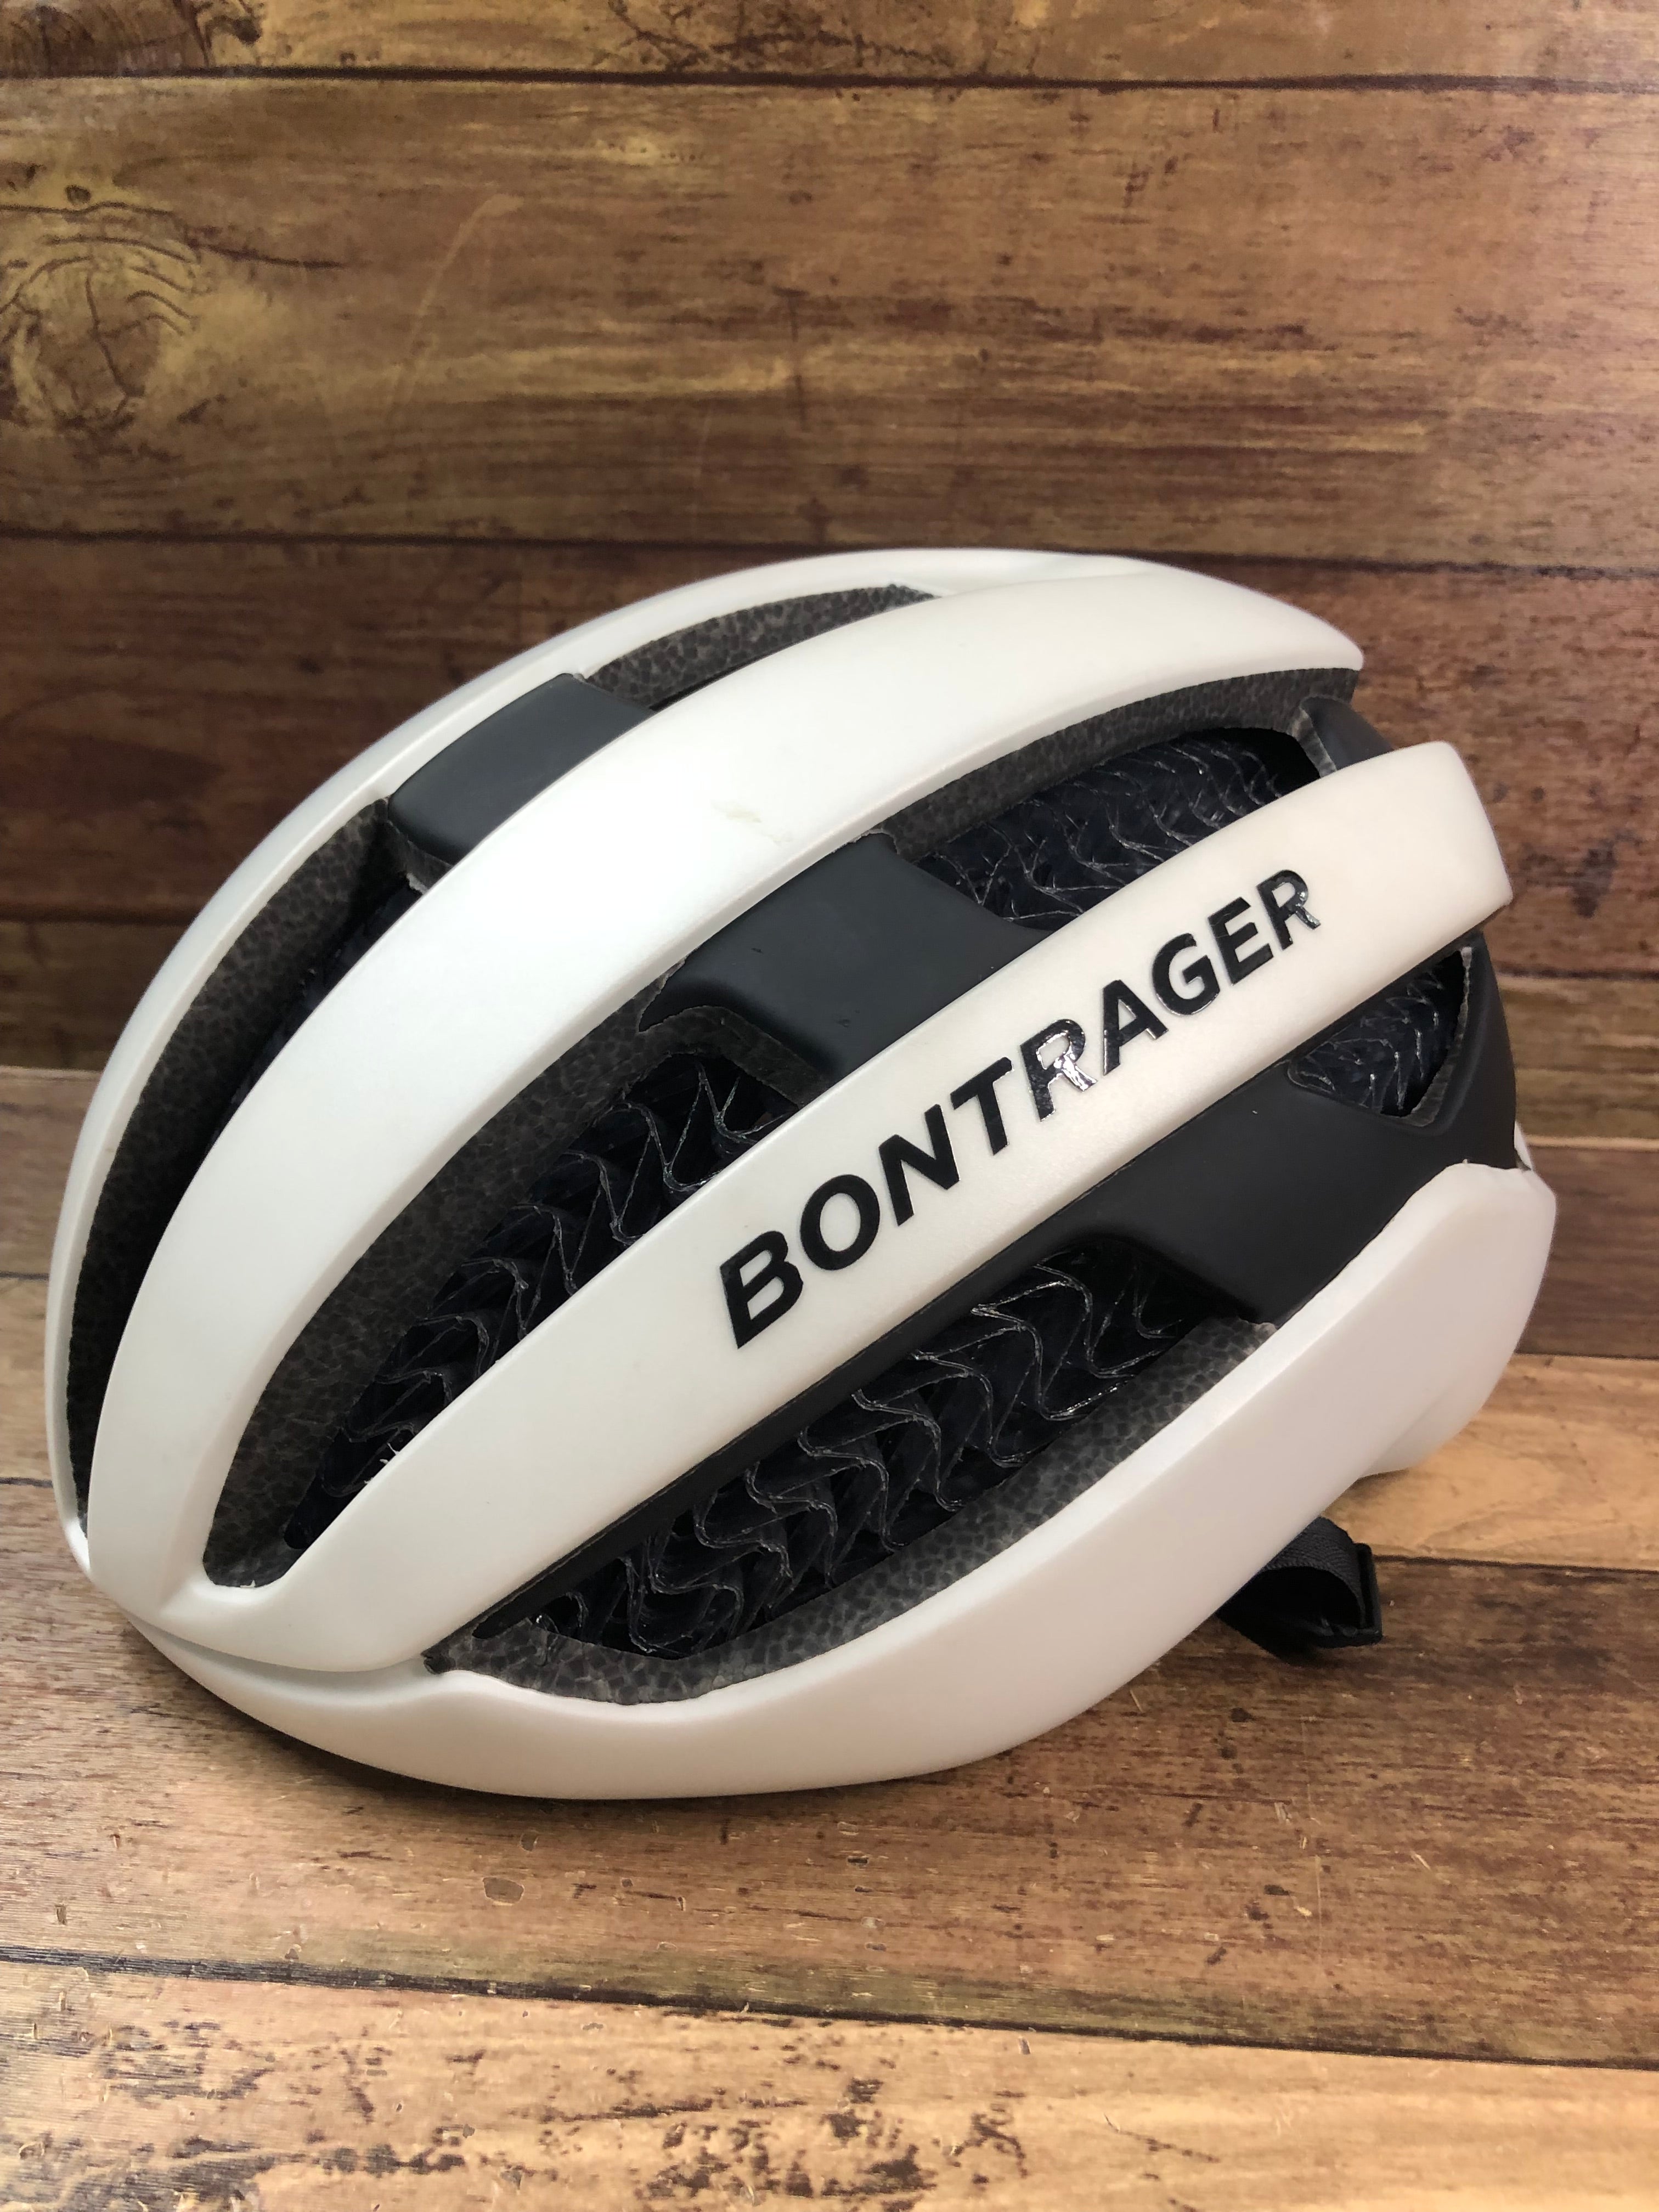 HL631 ボントレガー BONTRAGER Circuit WaveCel Helmet ヘルメット 白 